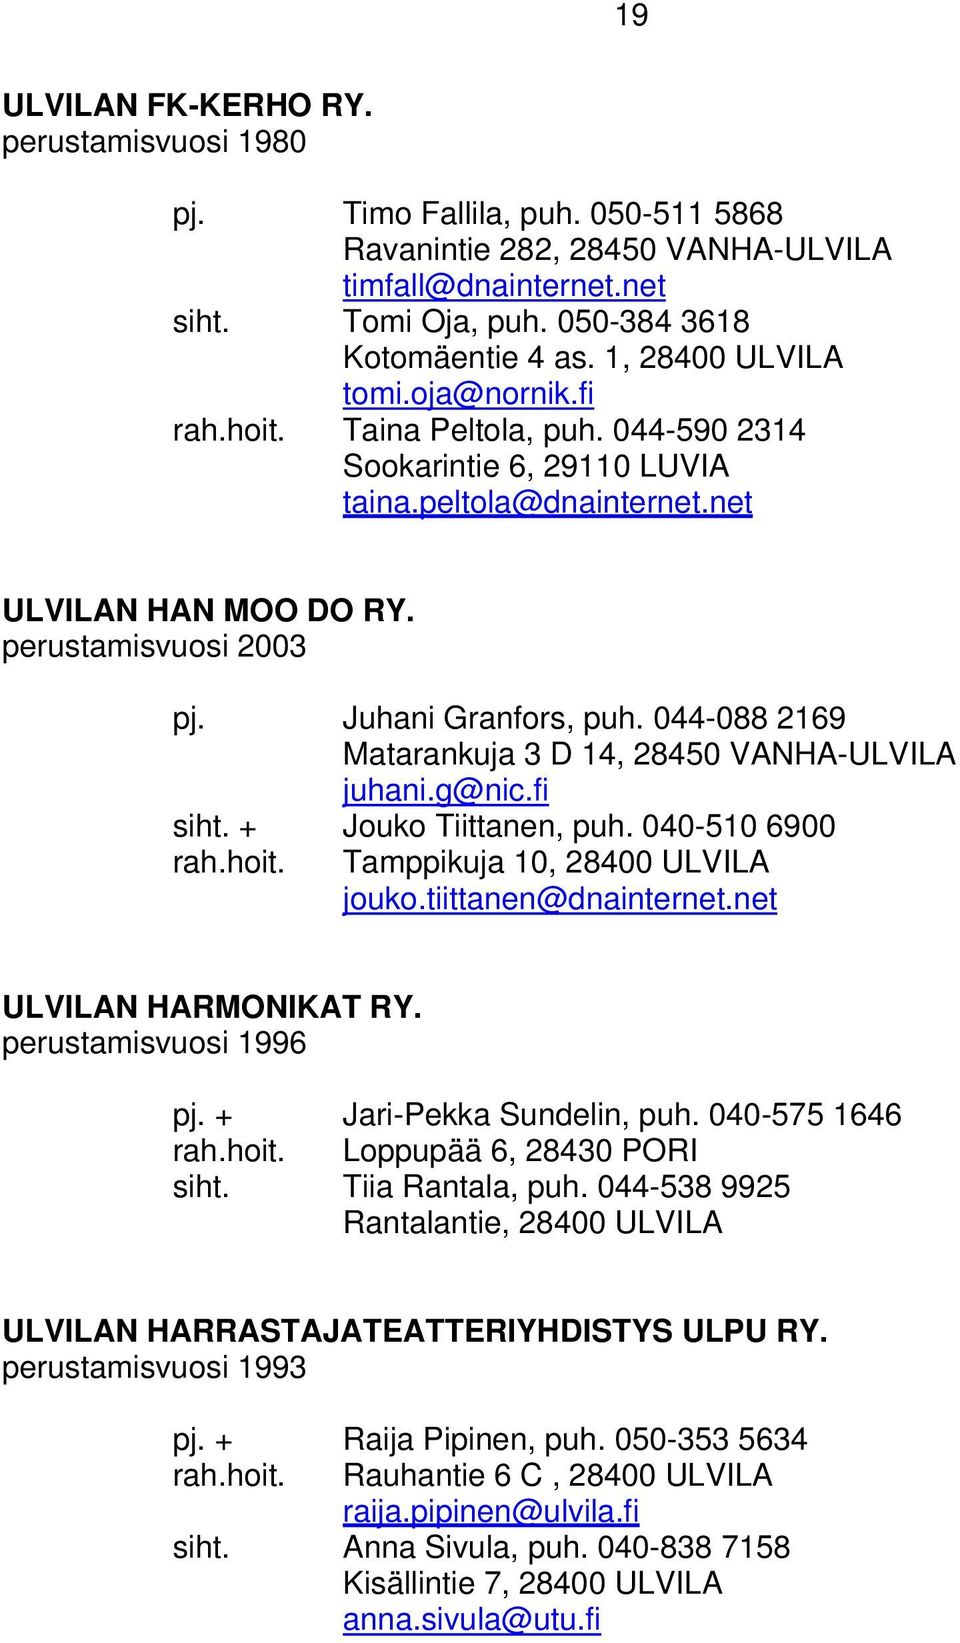 Juhani Granfors, puh. 044-088 2169 Matarankuja 3 D 14, 28450 VANHA-ULVILA juhani.g@nic.fi siht. + Jouko Tiittanen, puh. 040-510 6900 rah.hoit. Tamppikuja 10, 28400 ULVILA jouko.tiittanen@dnainternet.